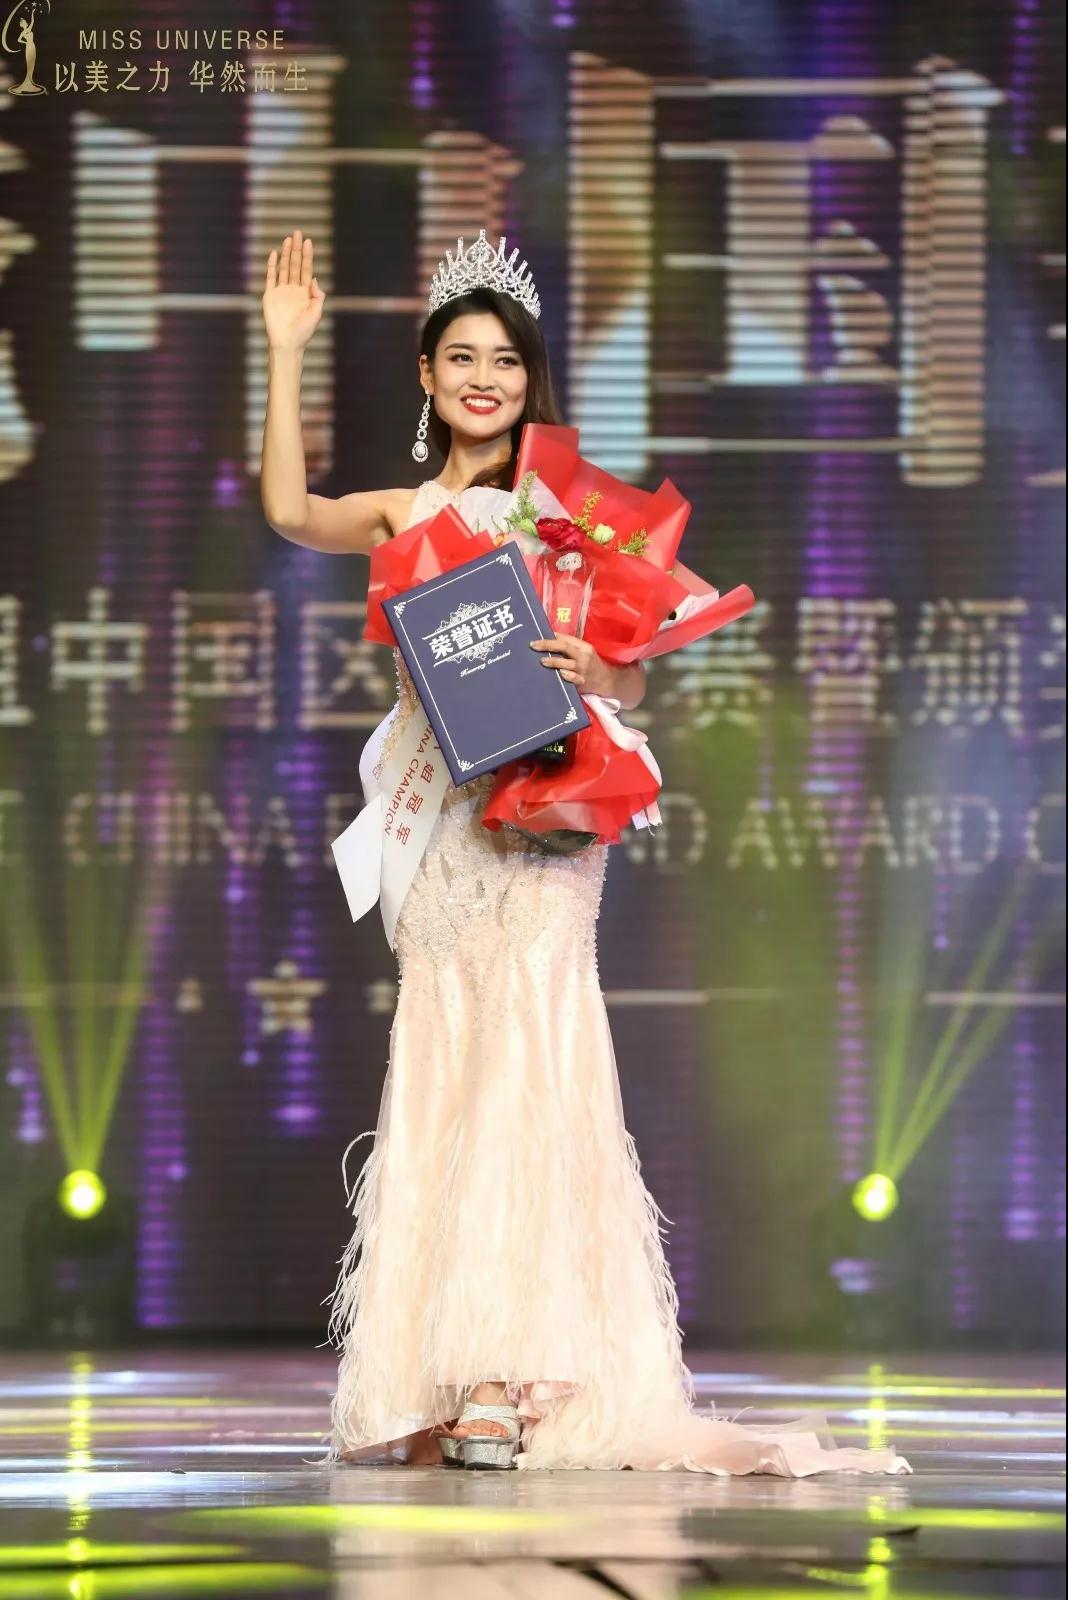 惊艳鹏城 | 第67届中国环球小姐诞生,朱鑫将代表中国出战全球总决赛